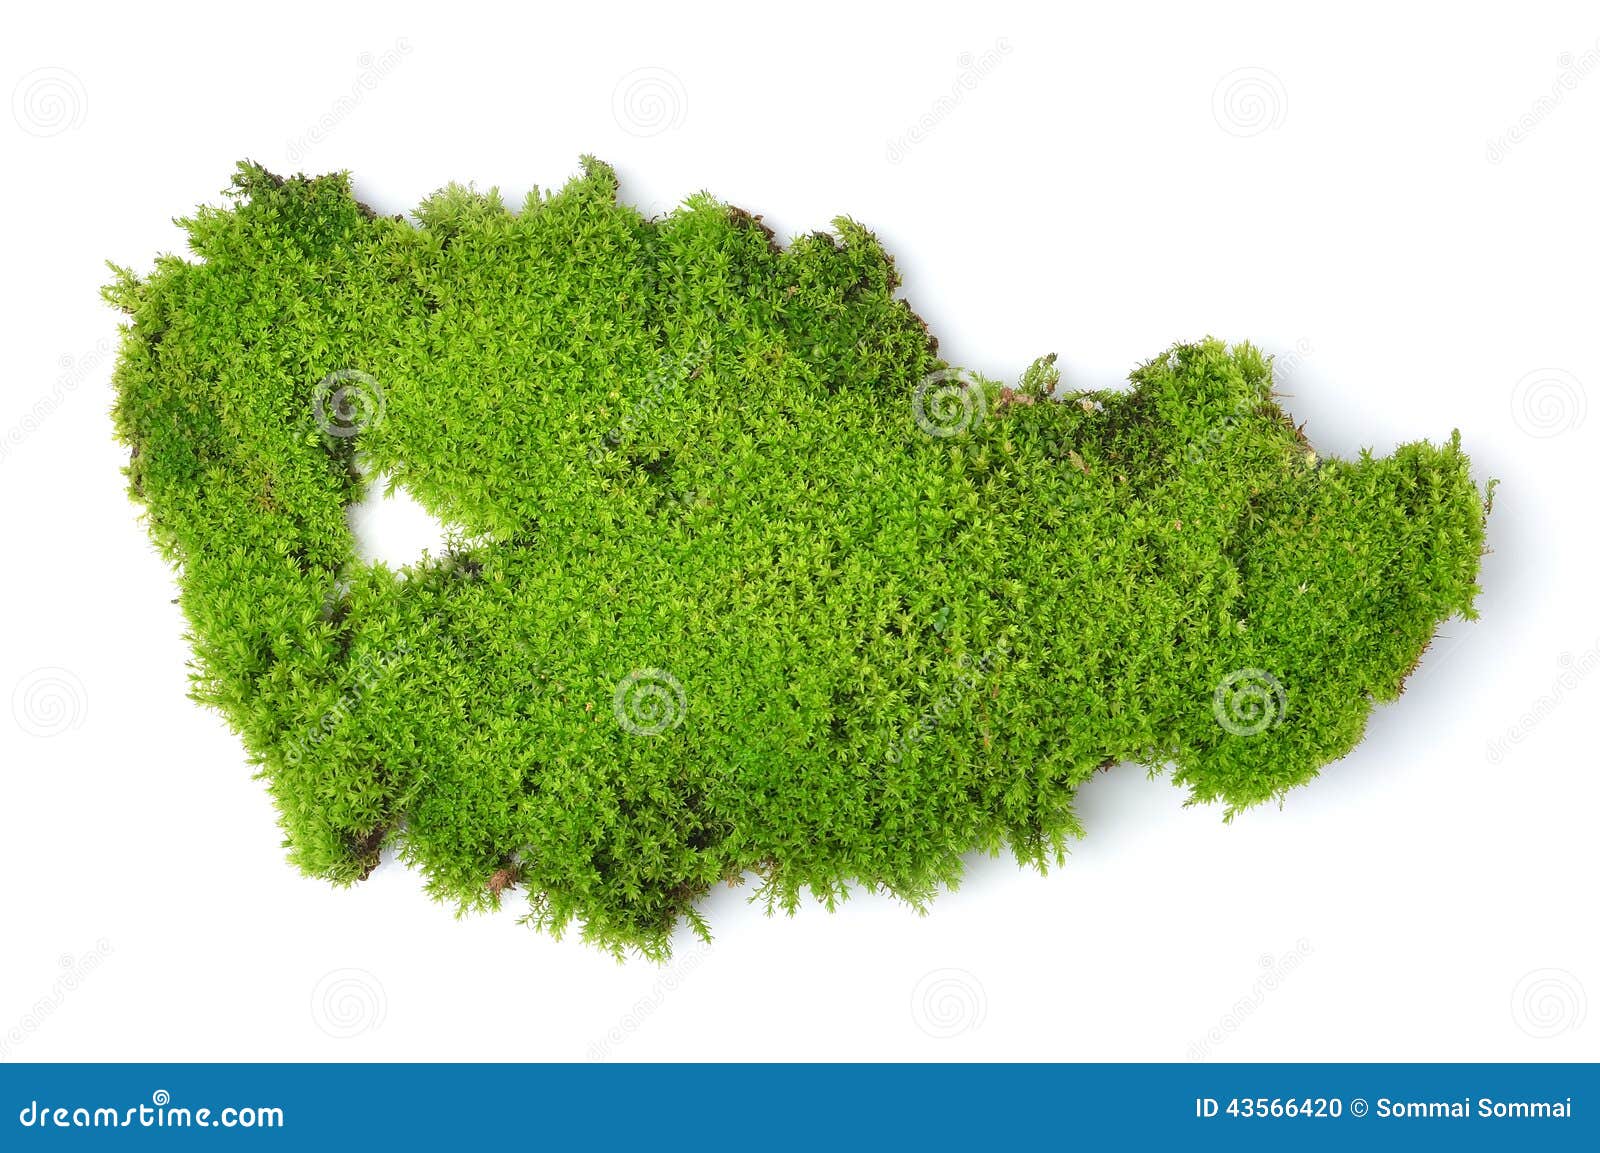 green moss on white bakground